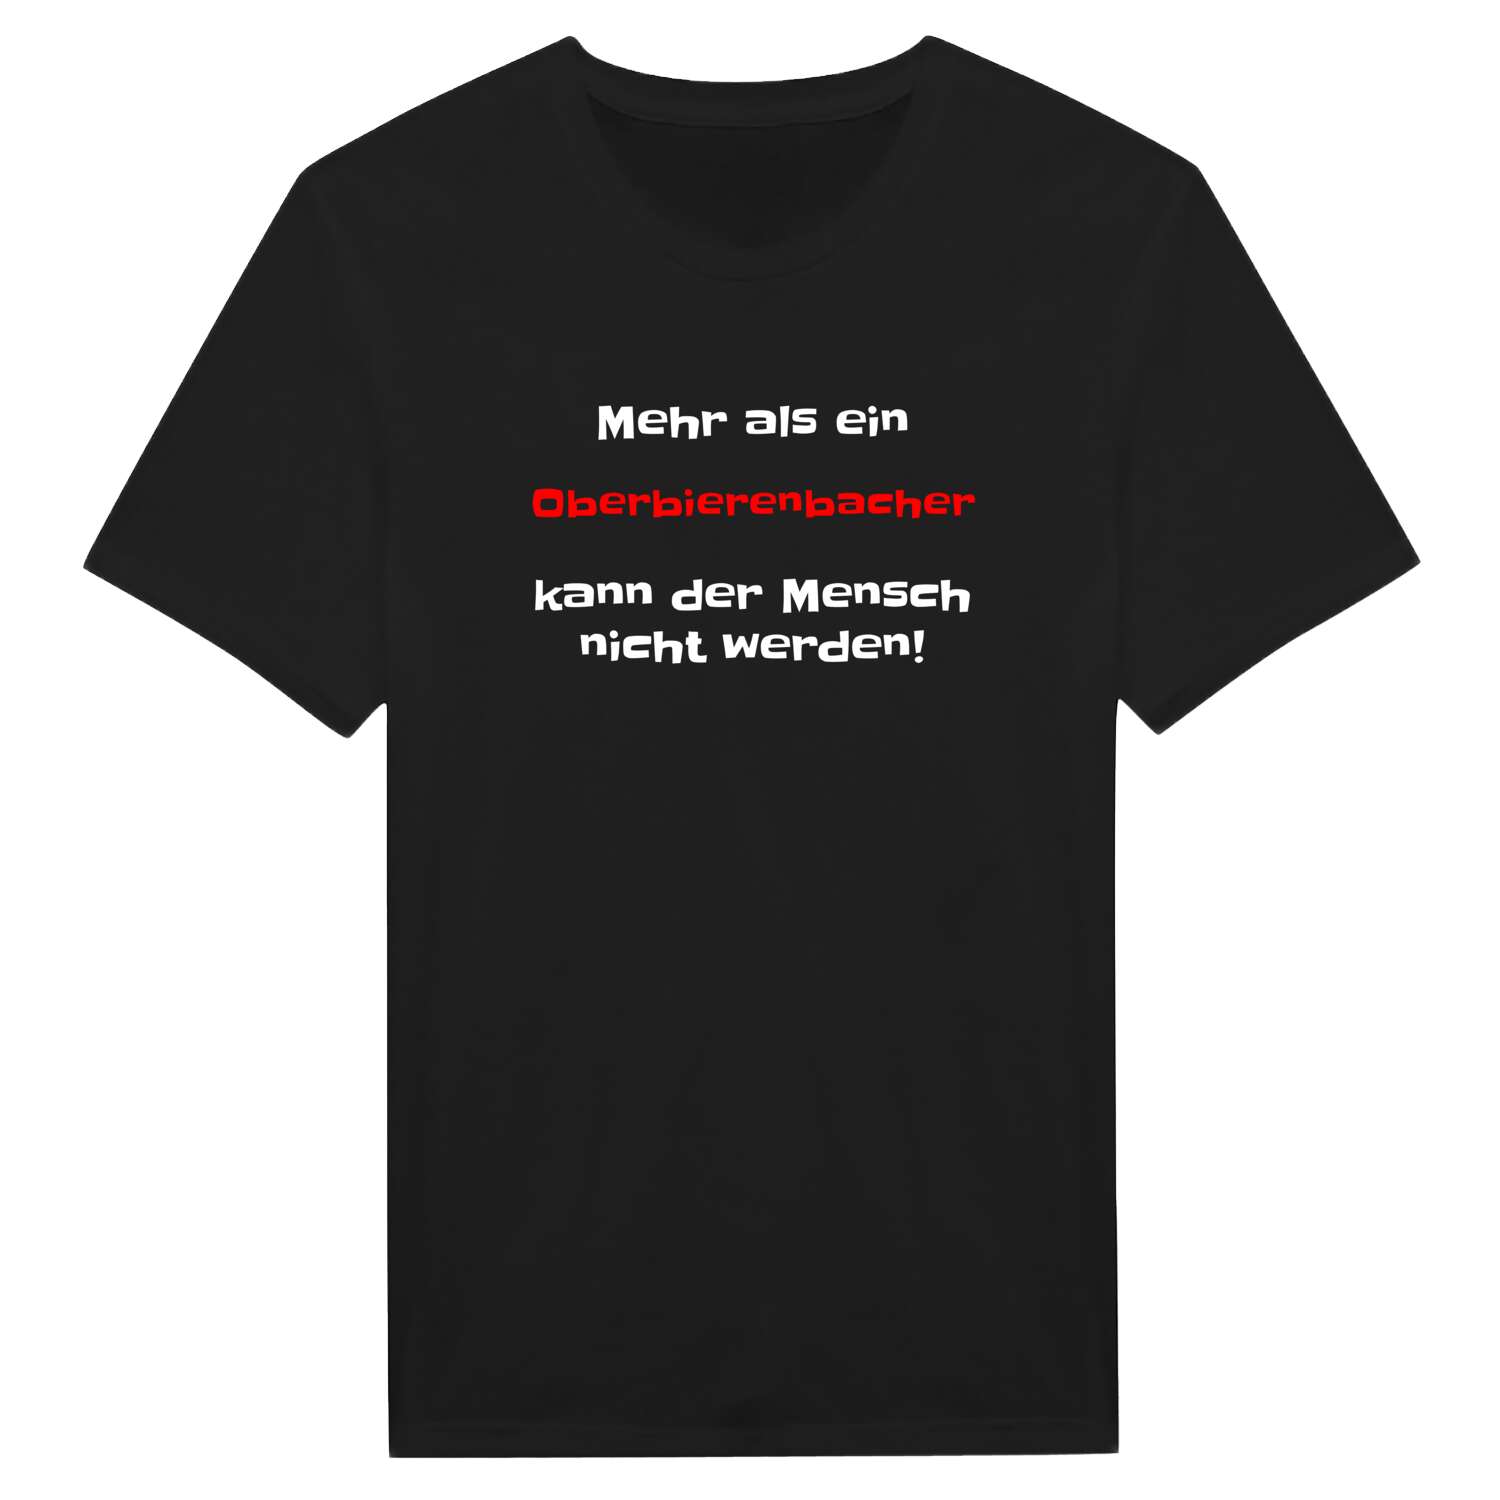 Oberbierenbach T-Shirt »Mehr als ein«